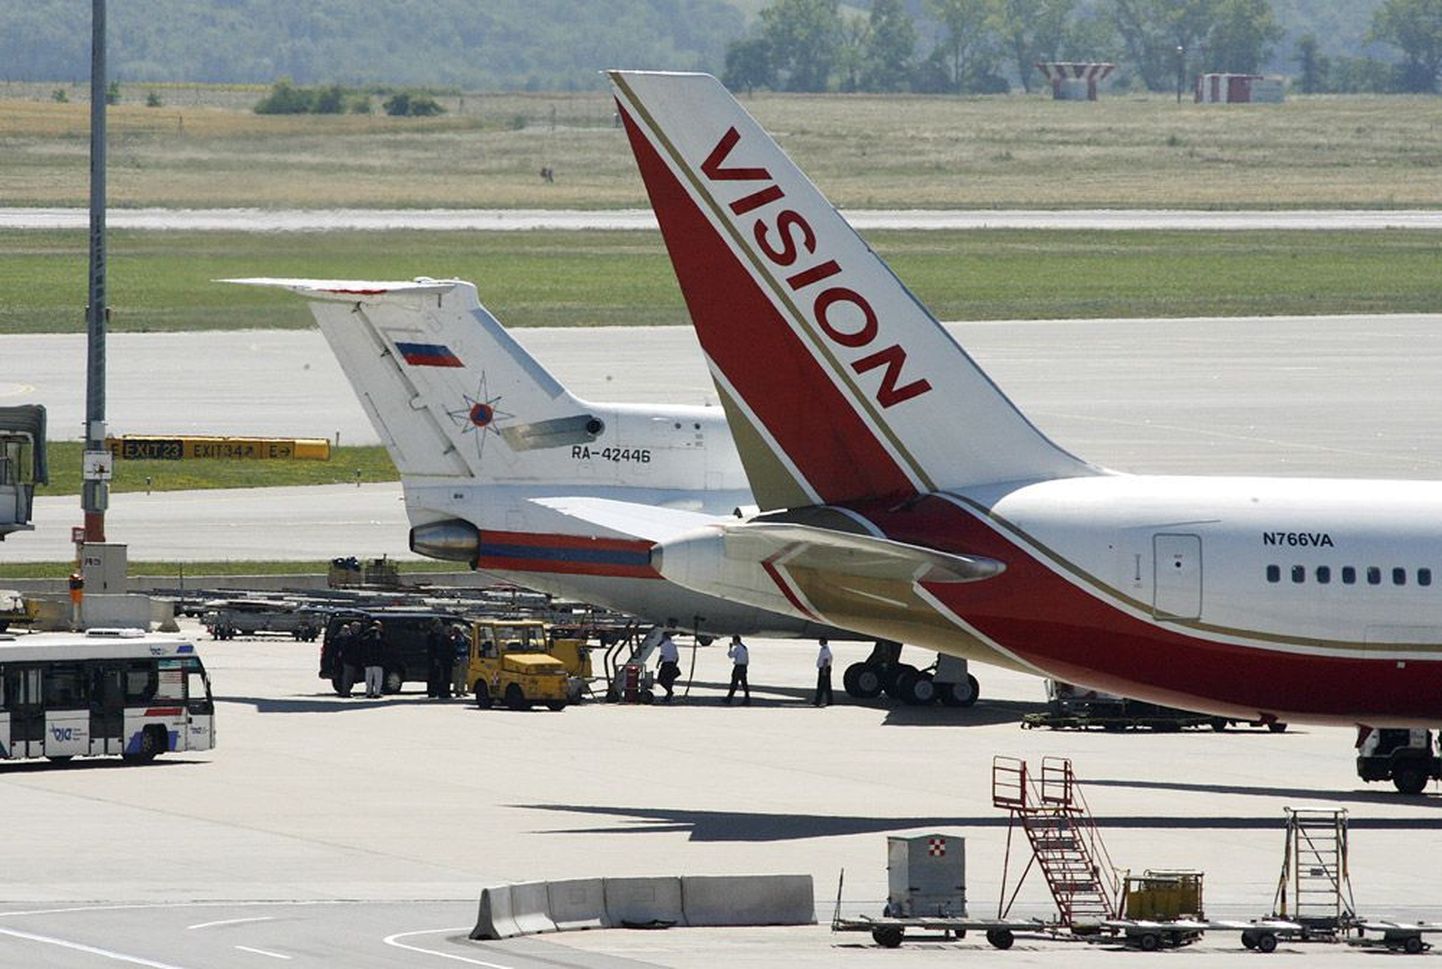 Visioni lennuk, kus olid Venemaale üleantavad spiooni, ja selle kõrvale parkinud Vene lennuk Viini lennuväljal.